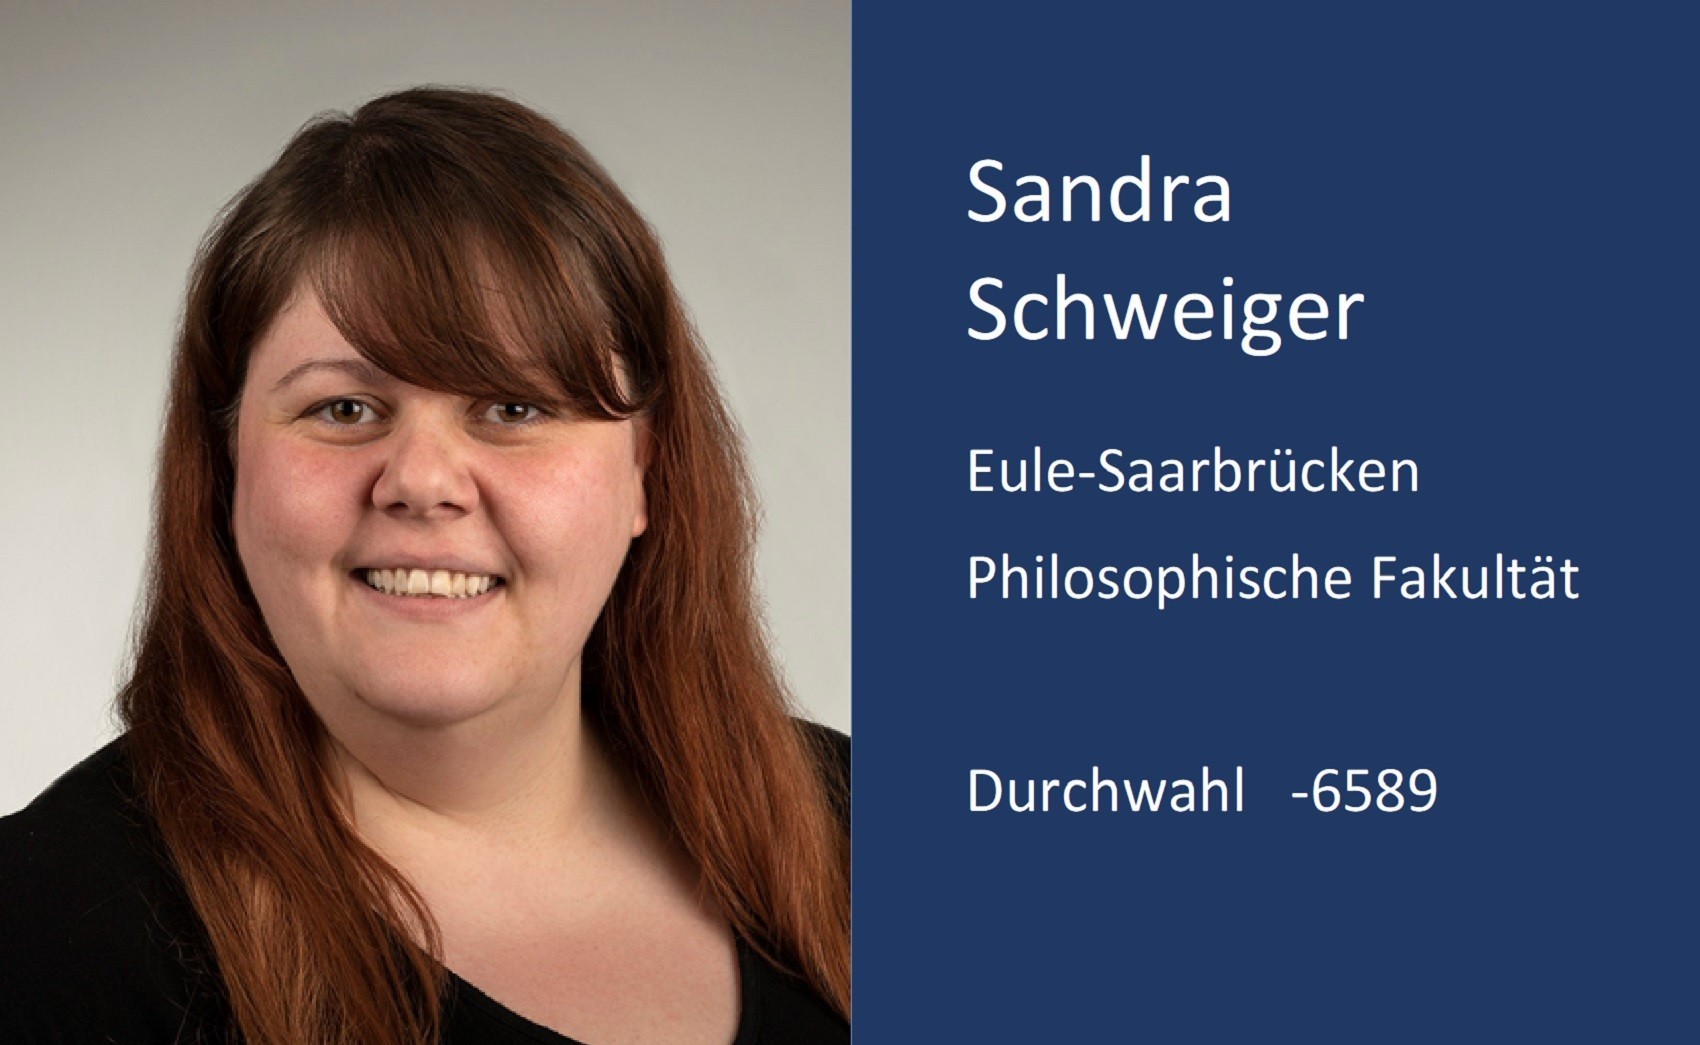 Sandra Schweiger, Kontaktdaten, Durchwahl, 6 5 8 9, Email, sandra.schweiger ät uni minus saarland . d e